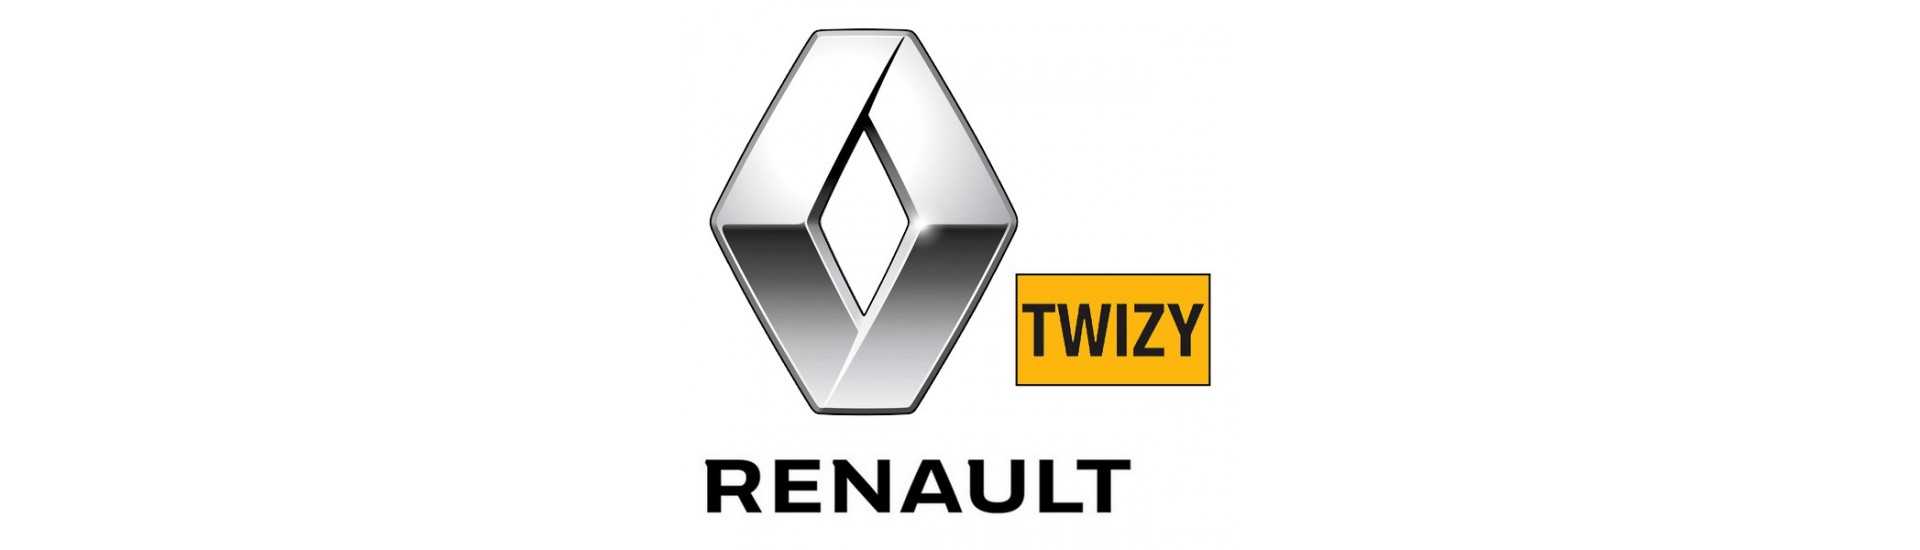 Pare brise au meilleur prix pour voiture sans permis Renault Twizy